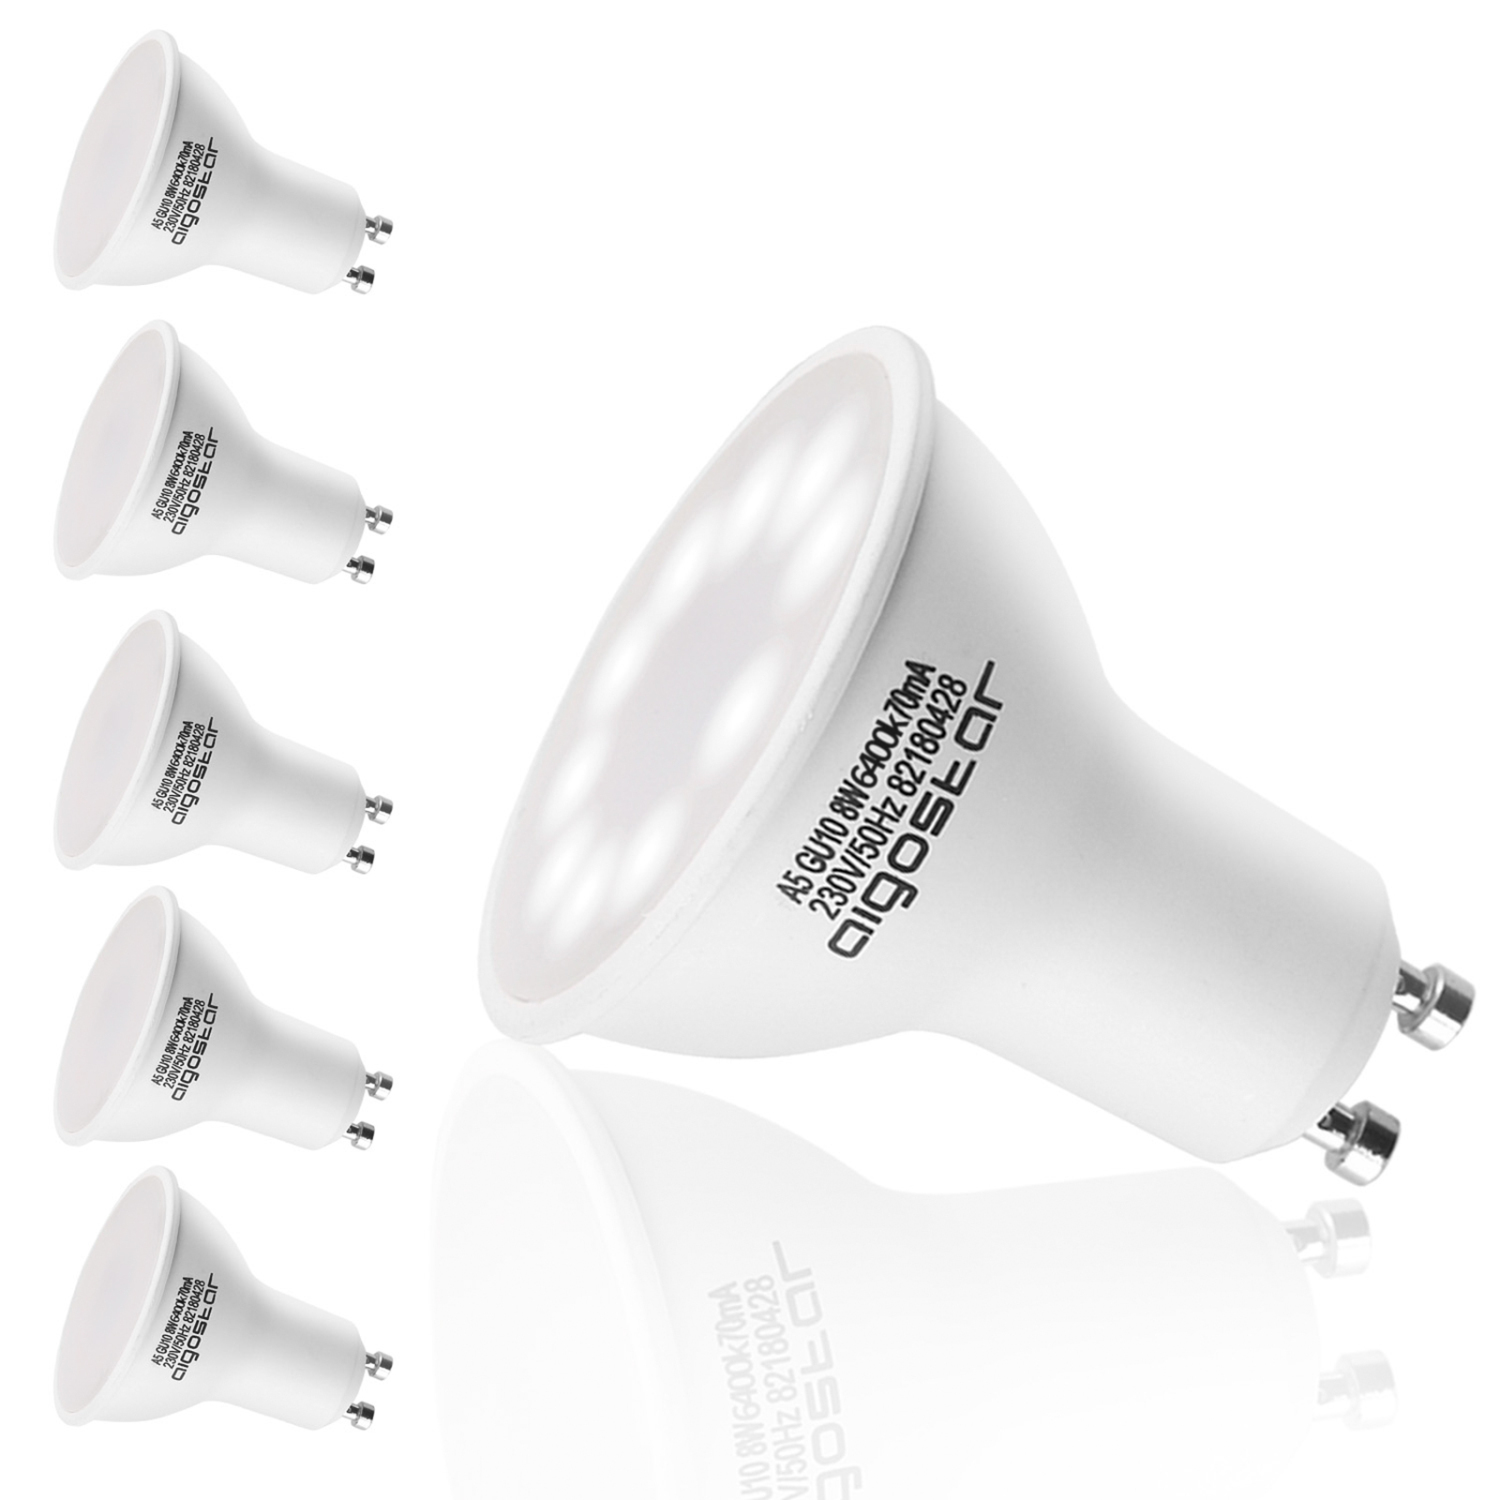 Aigostar GU10 Ledlampen 8W lampen GU 10 schijnwerpers, koud wit licht 6400K, LED-verlichting, 600 lumen, 5 stuks